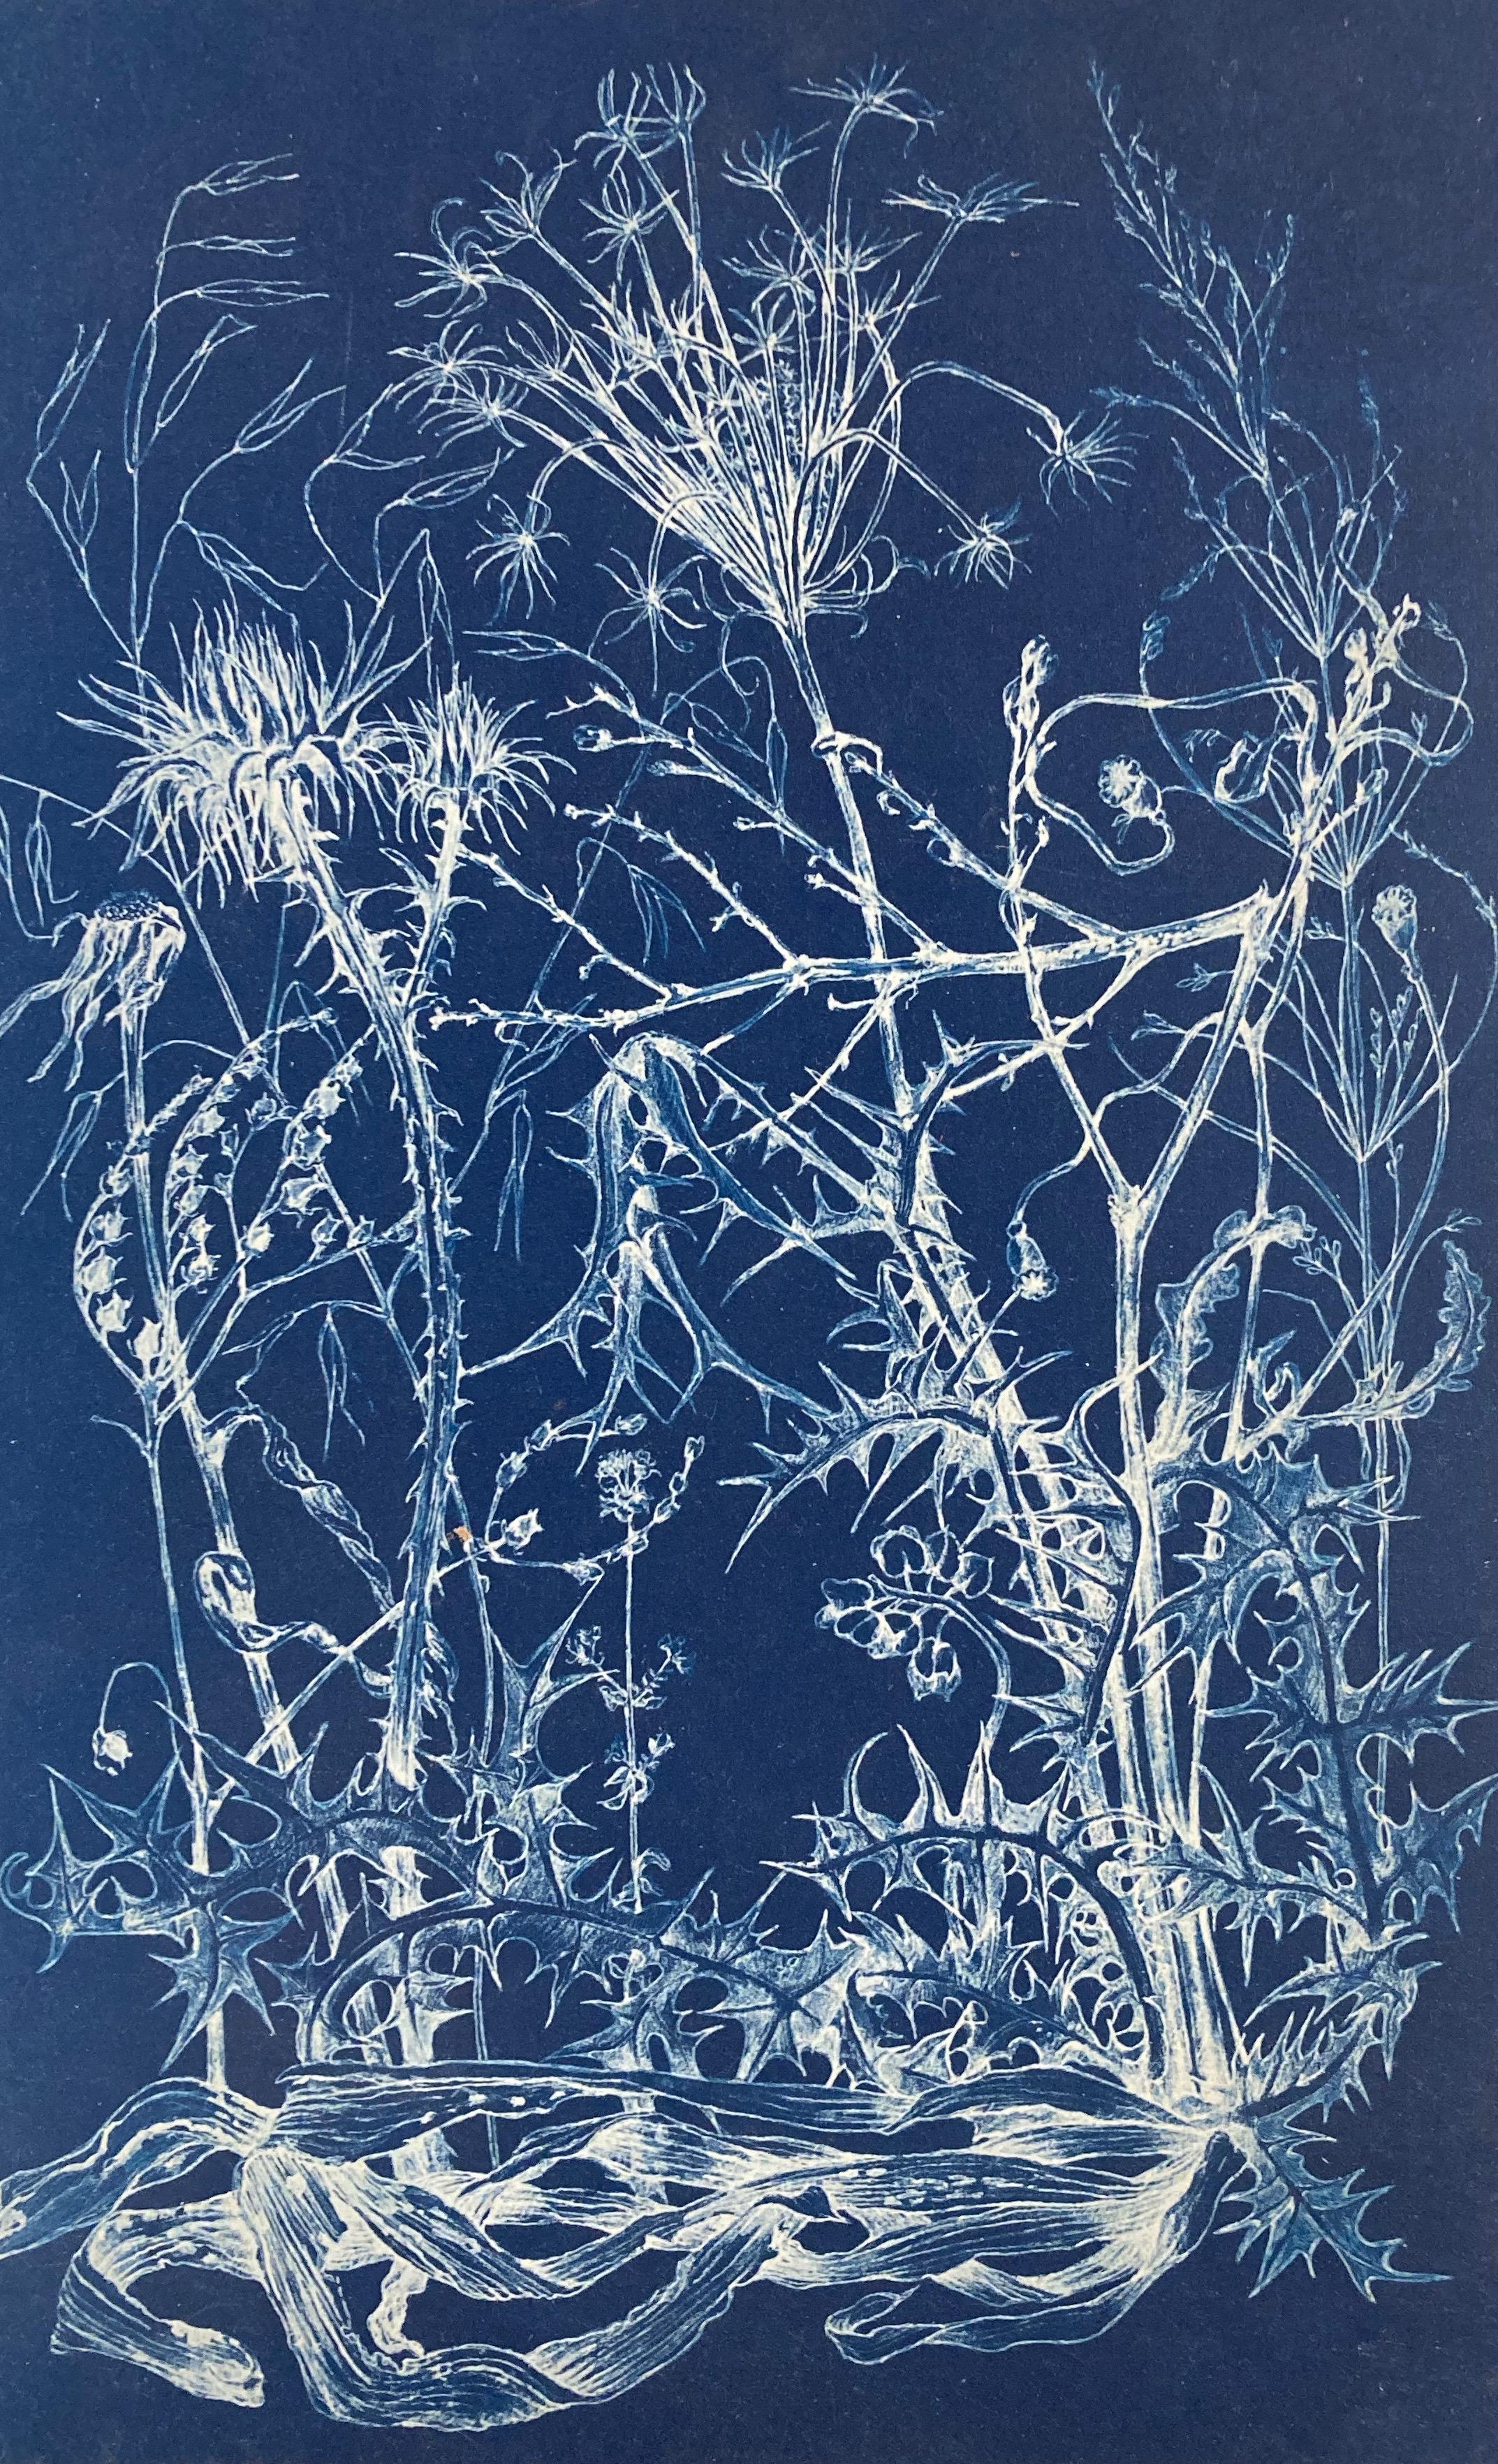 Judith Allen-Efstathiou Landscape Photograph – „Mapping the Walk“ Fotograhic Flower Study Realistische und abstrakte Blumenstudie in Blau/Weiß